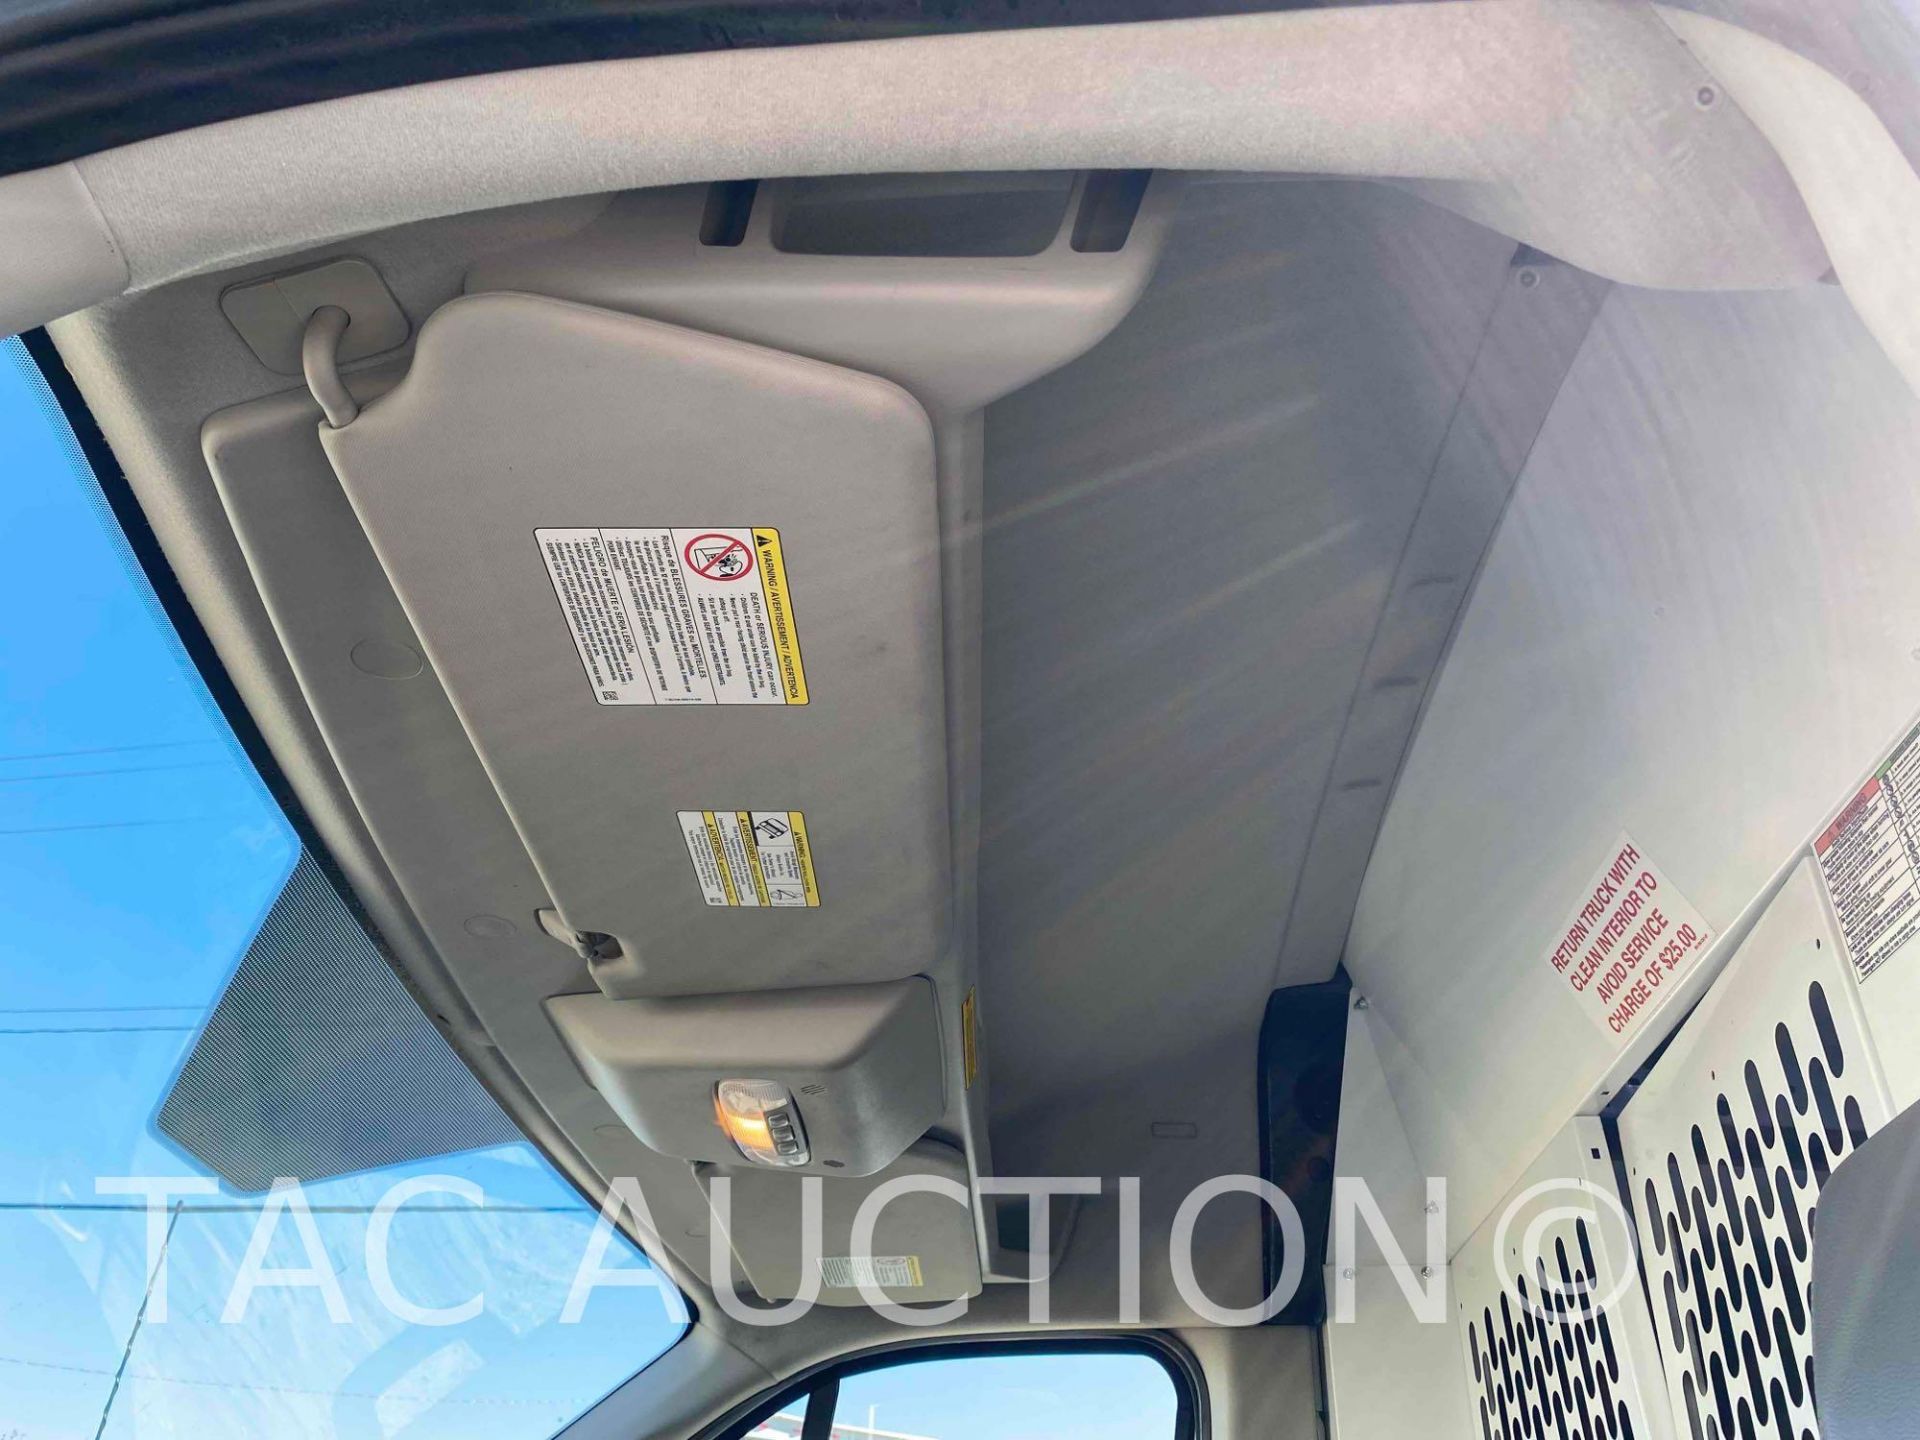 2019 Ford Transit 150 Cargo Van - Image 28 of 49